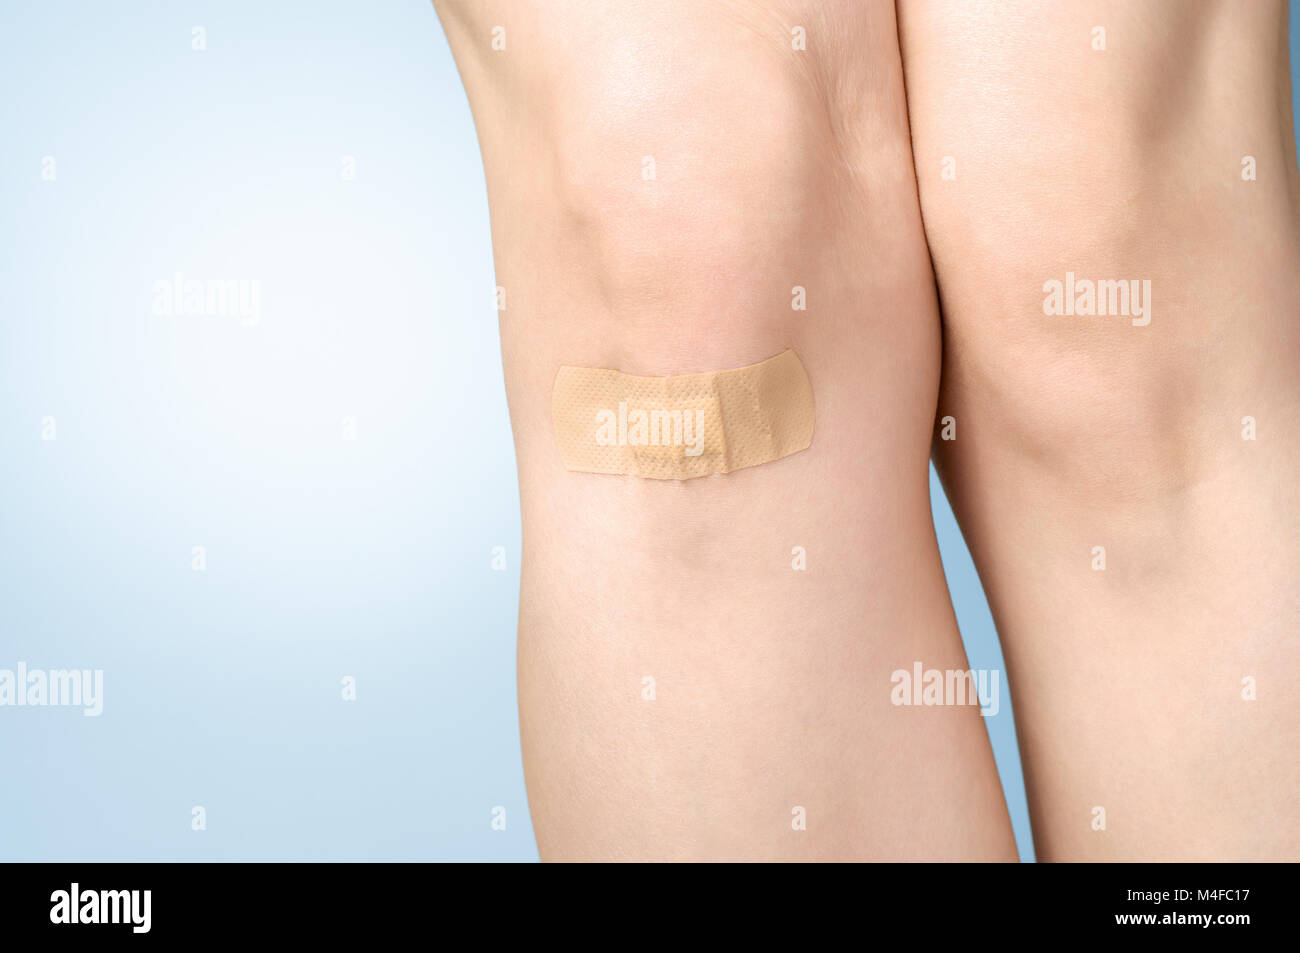 Female leg with adhesive bandage on blue background Stock Photo